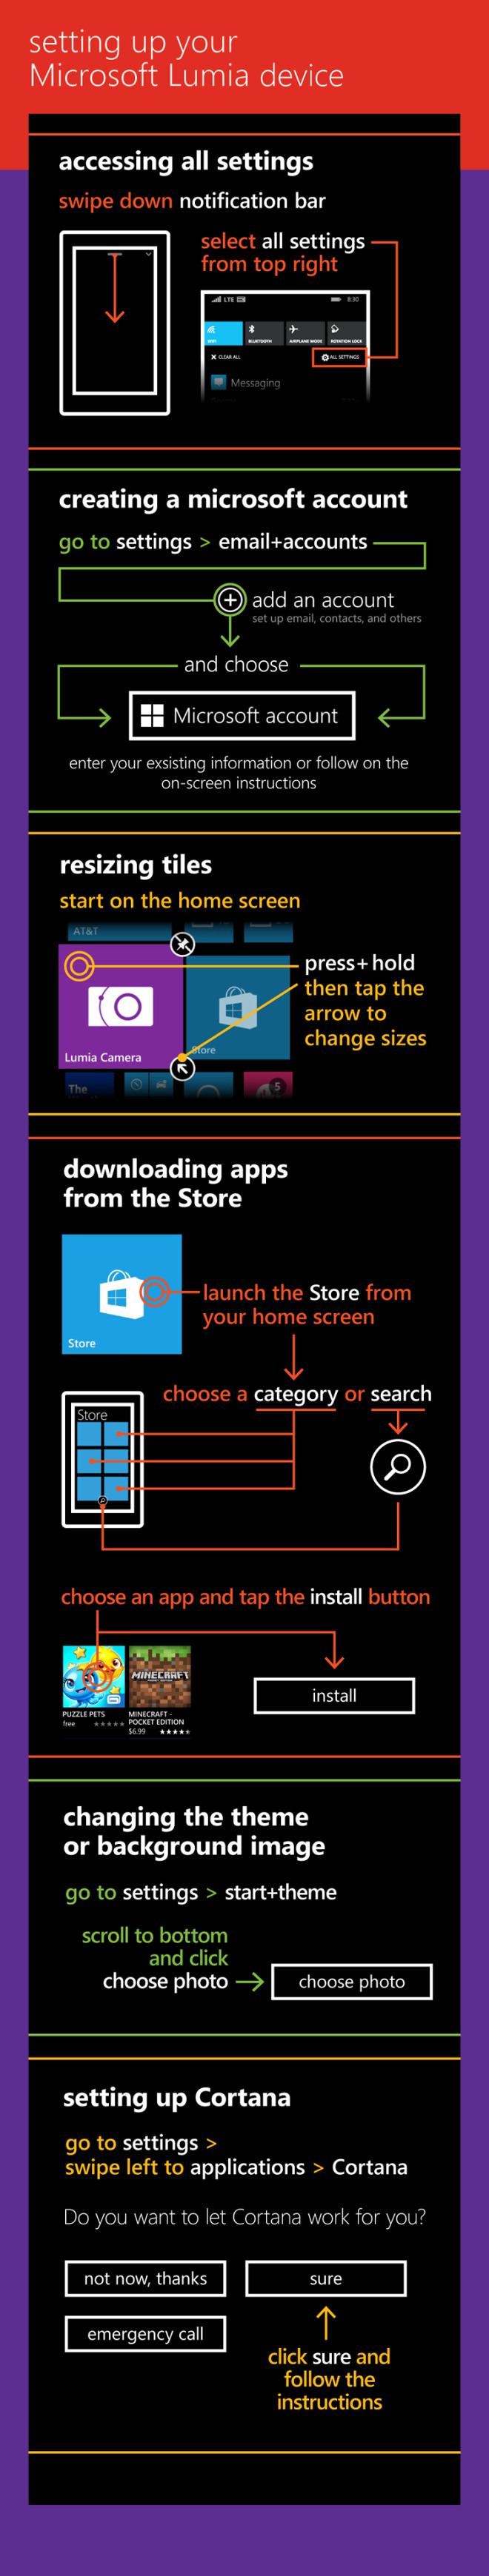 Microsoft выпустила полезную инфографику для новых пользователей Lumia